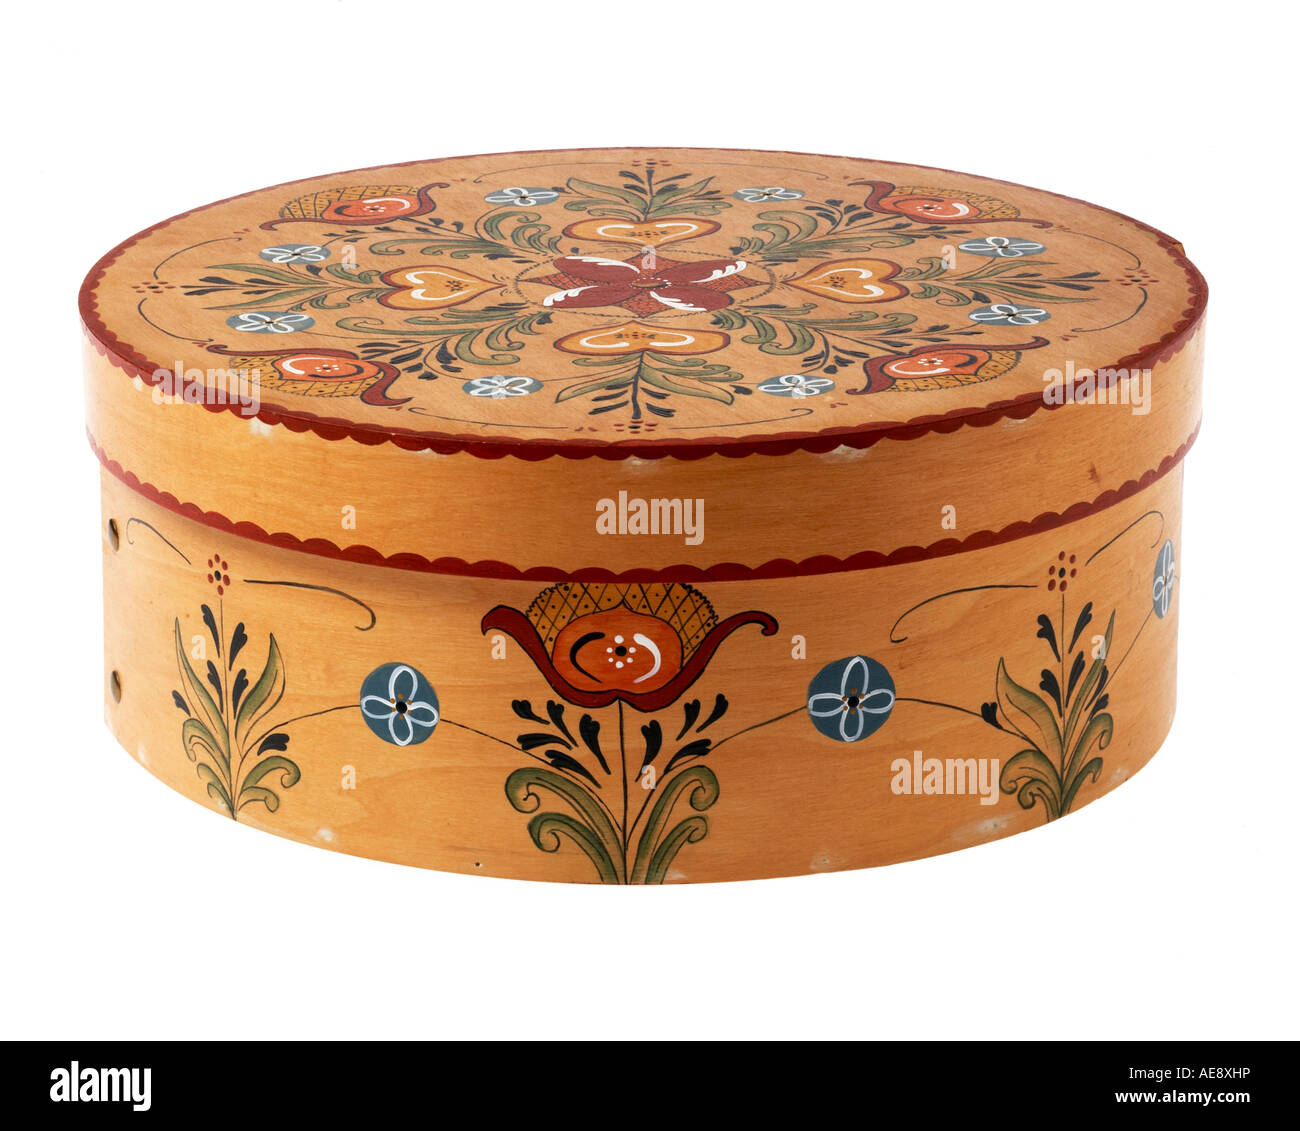 Decorativi in legno verniciato scatola di formaggio stagliano su sfondo bianco Foto Stock